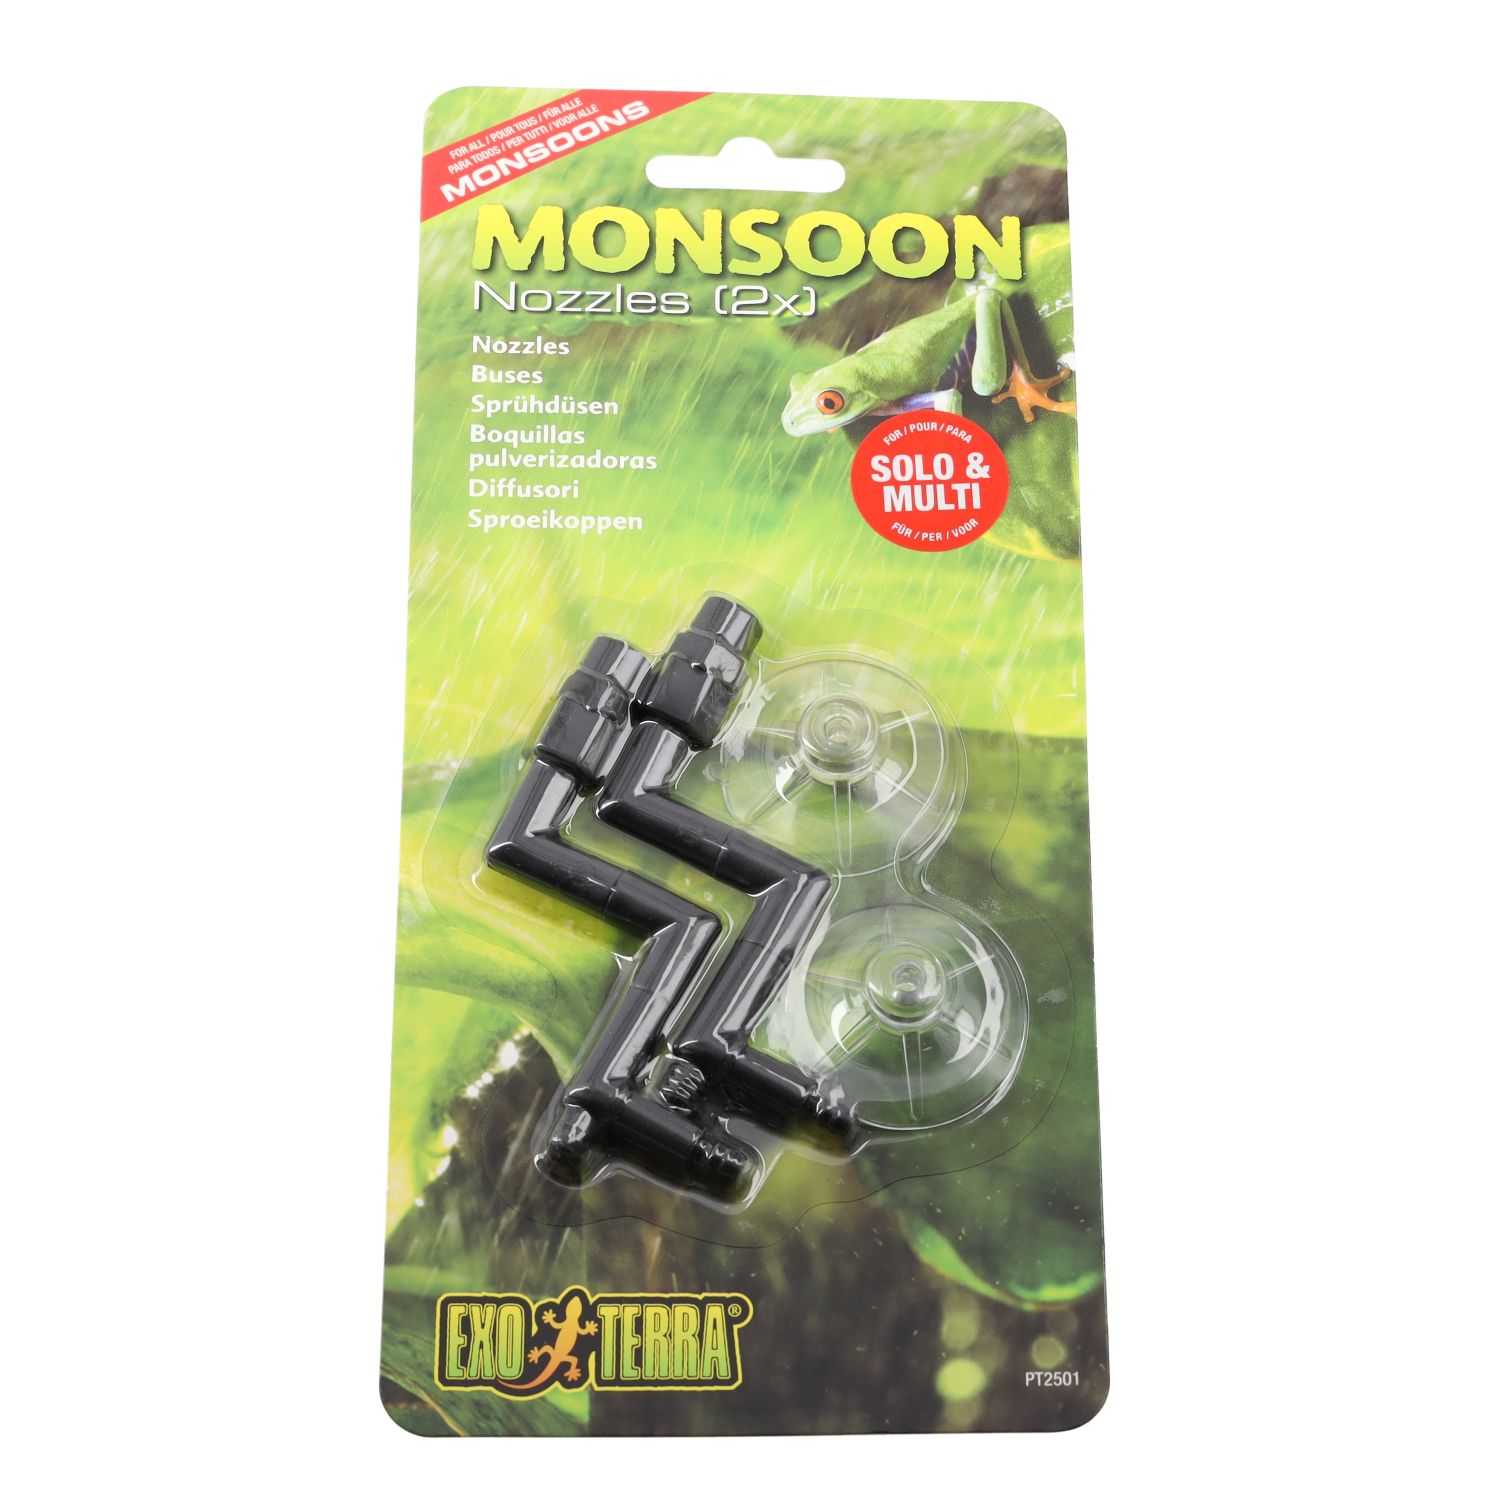 ET Monsoon Nozzles (1 Pack of 2 Piece), PT2501